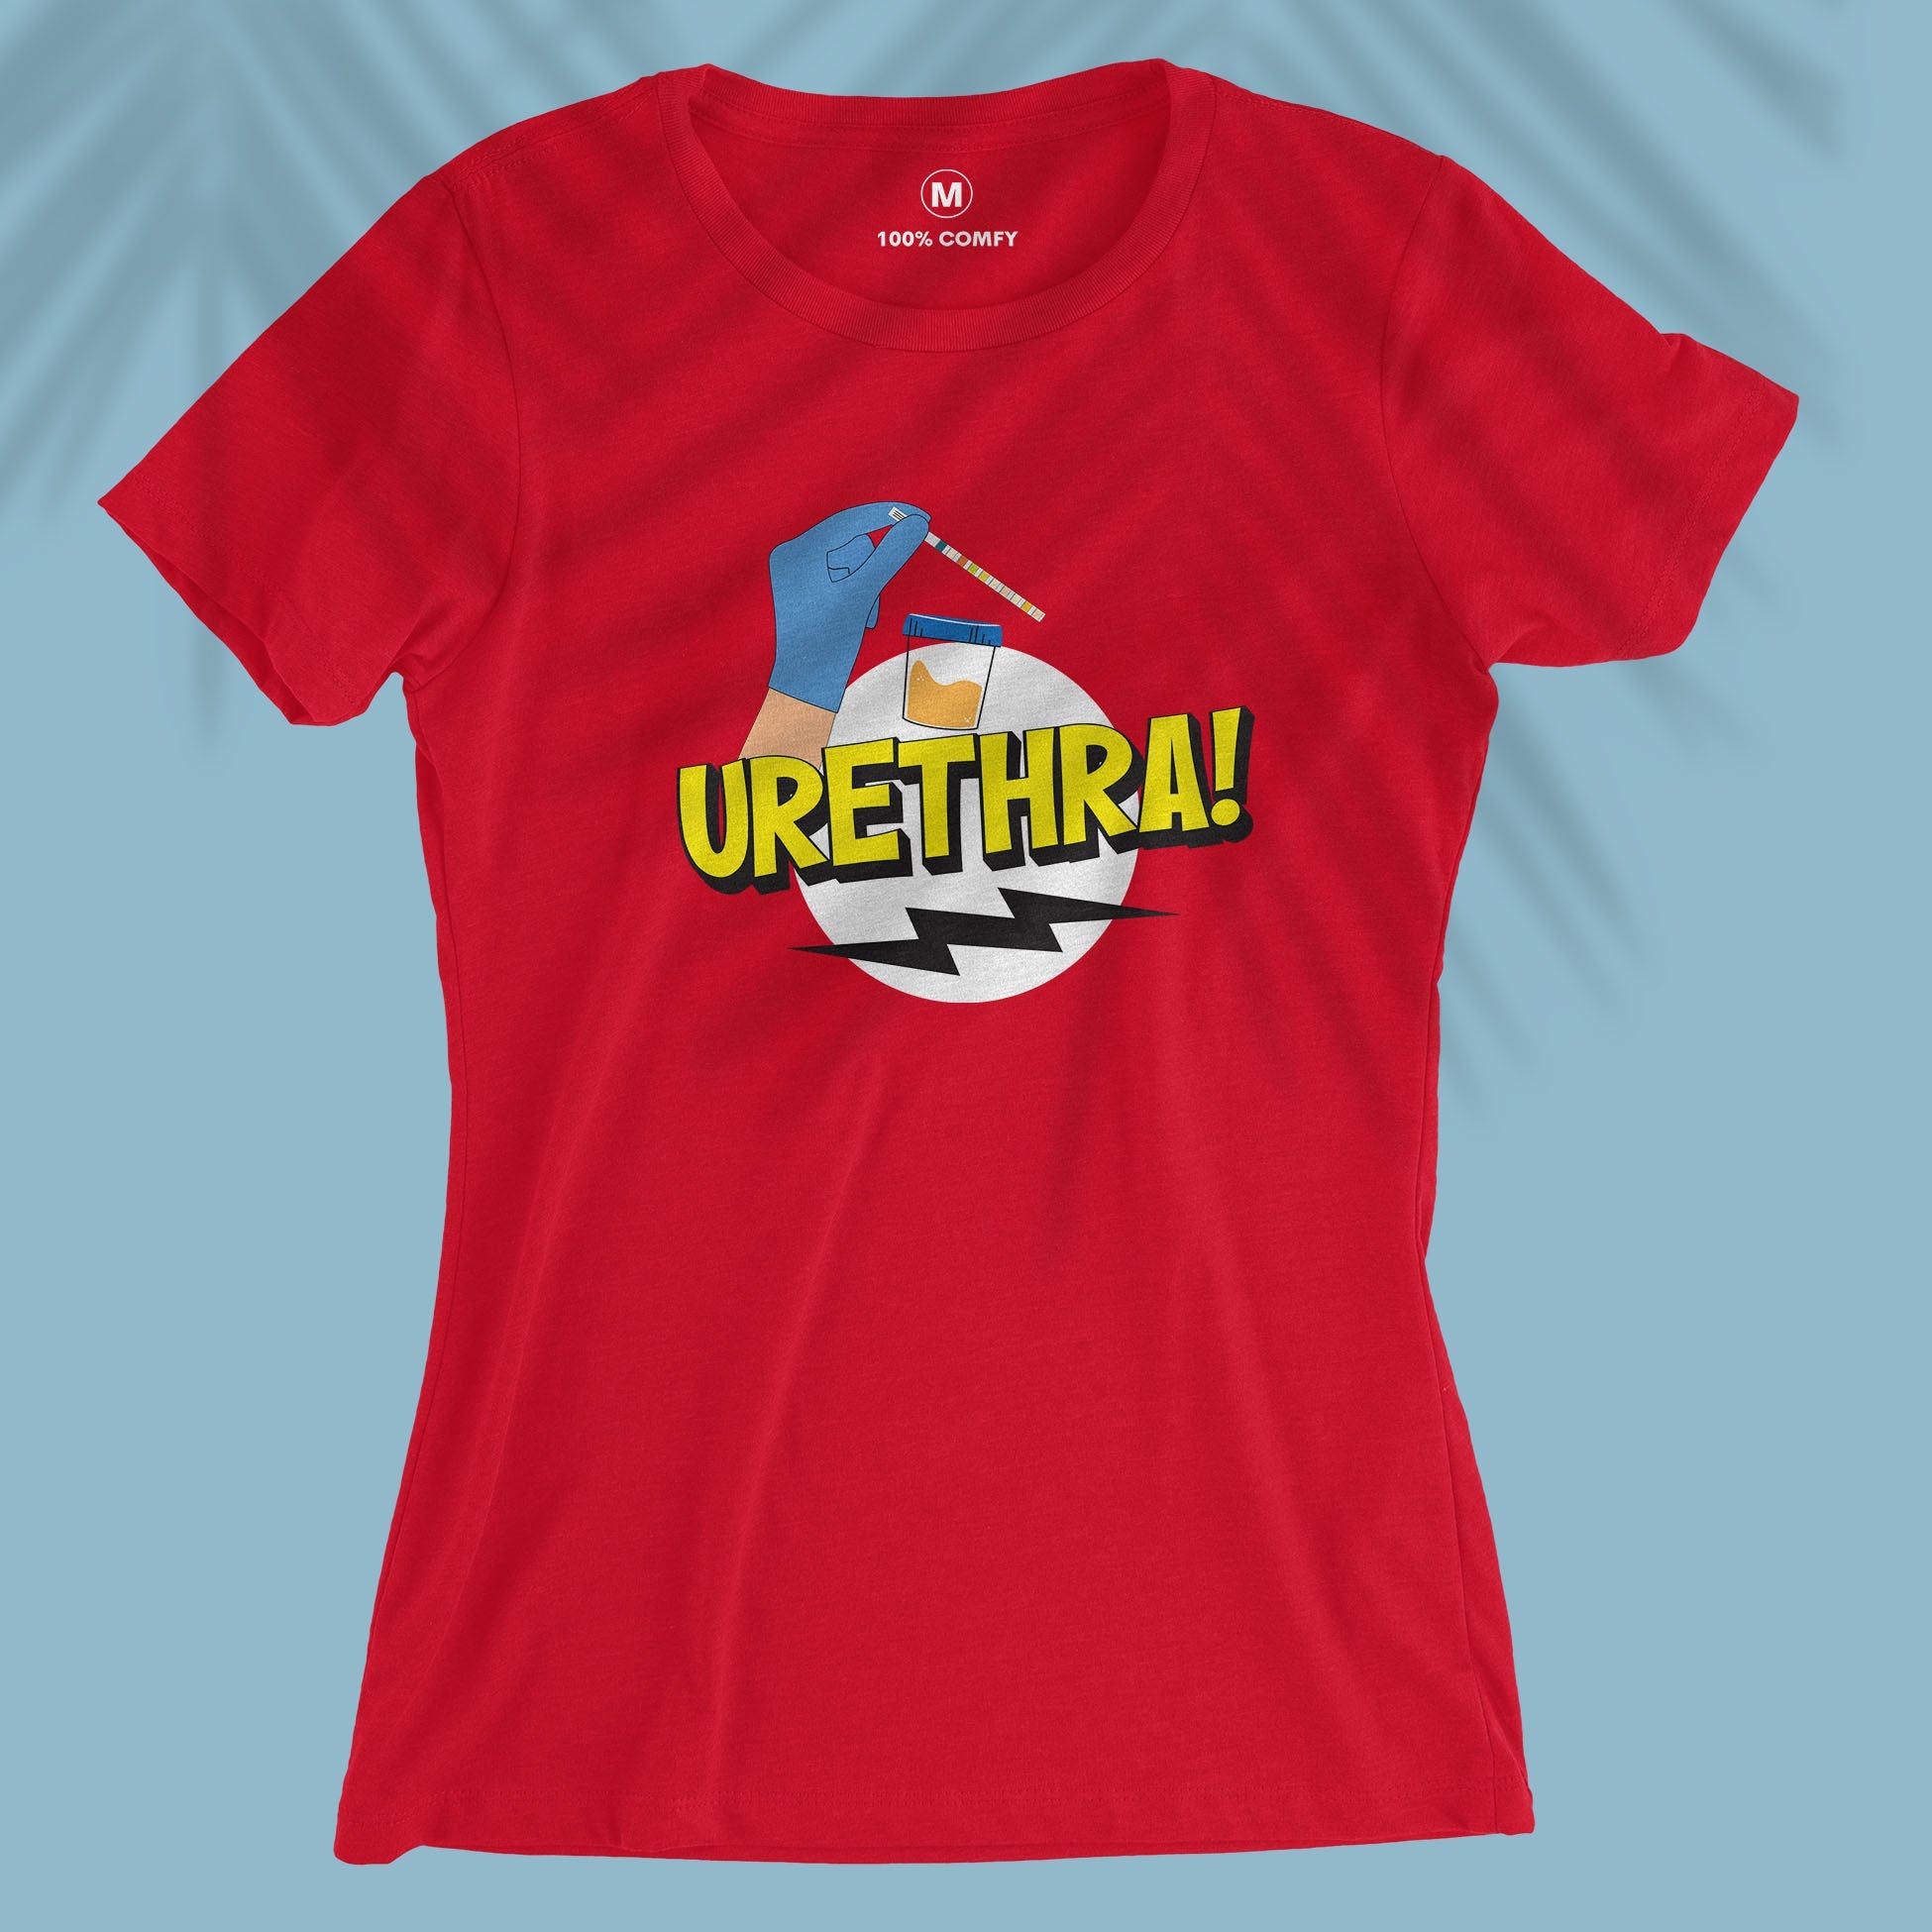 Urethra! - Women T-shirt